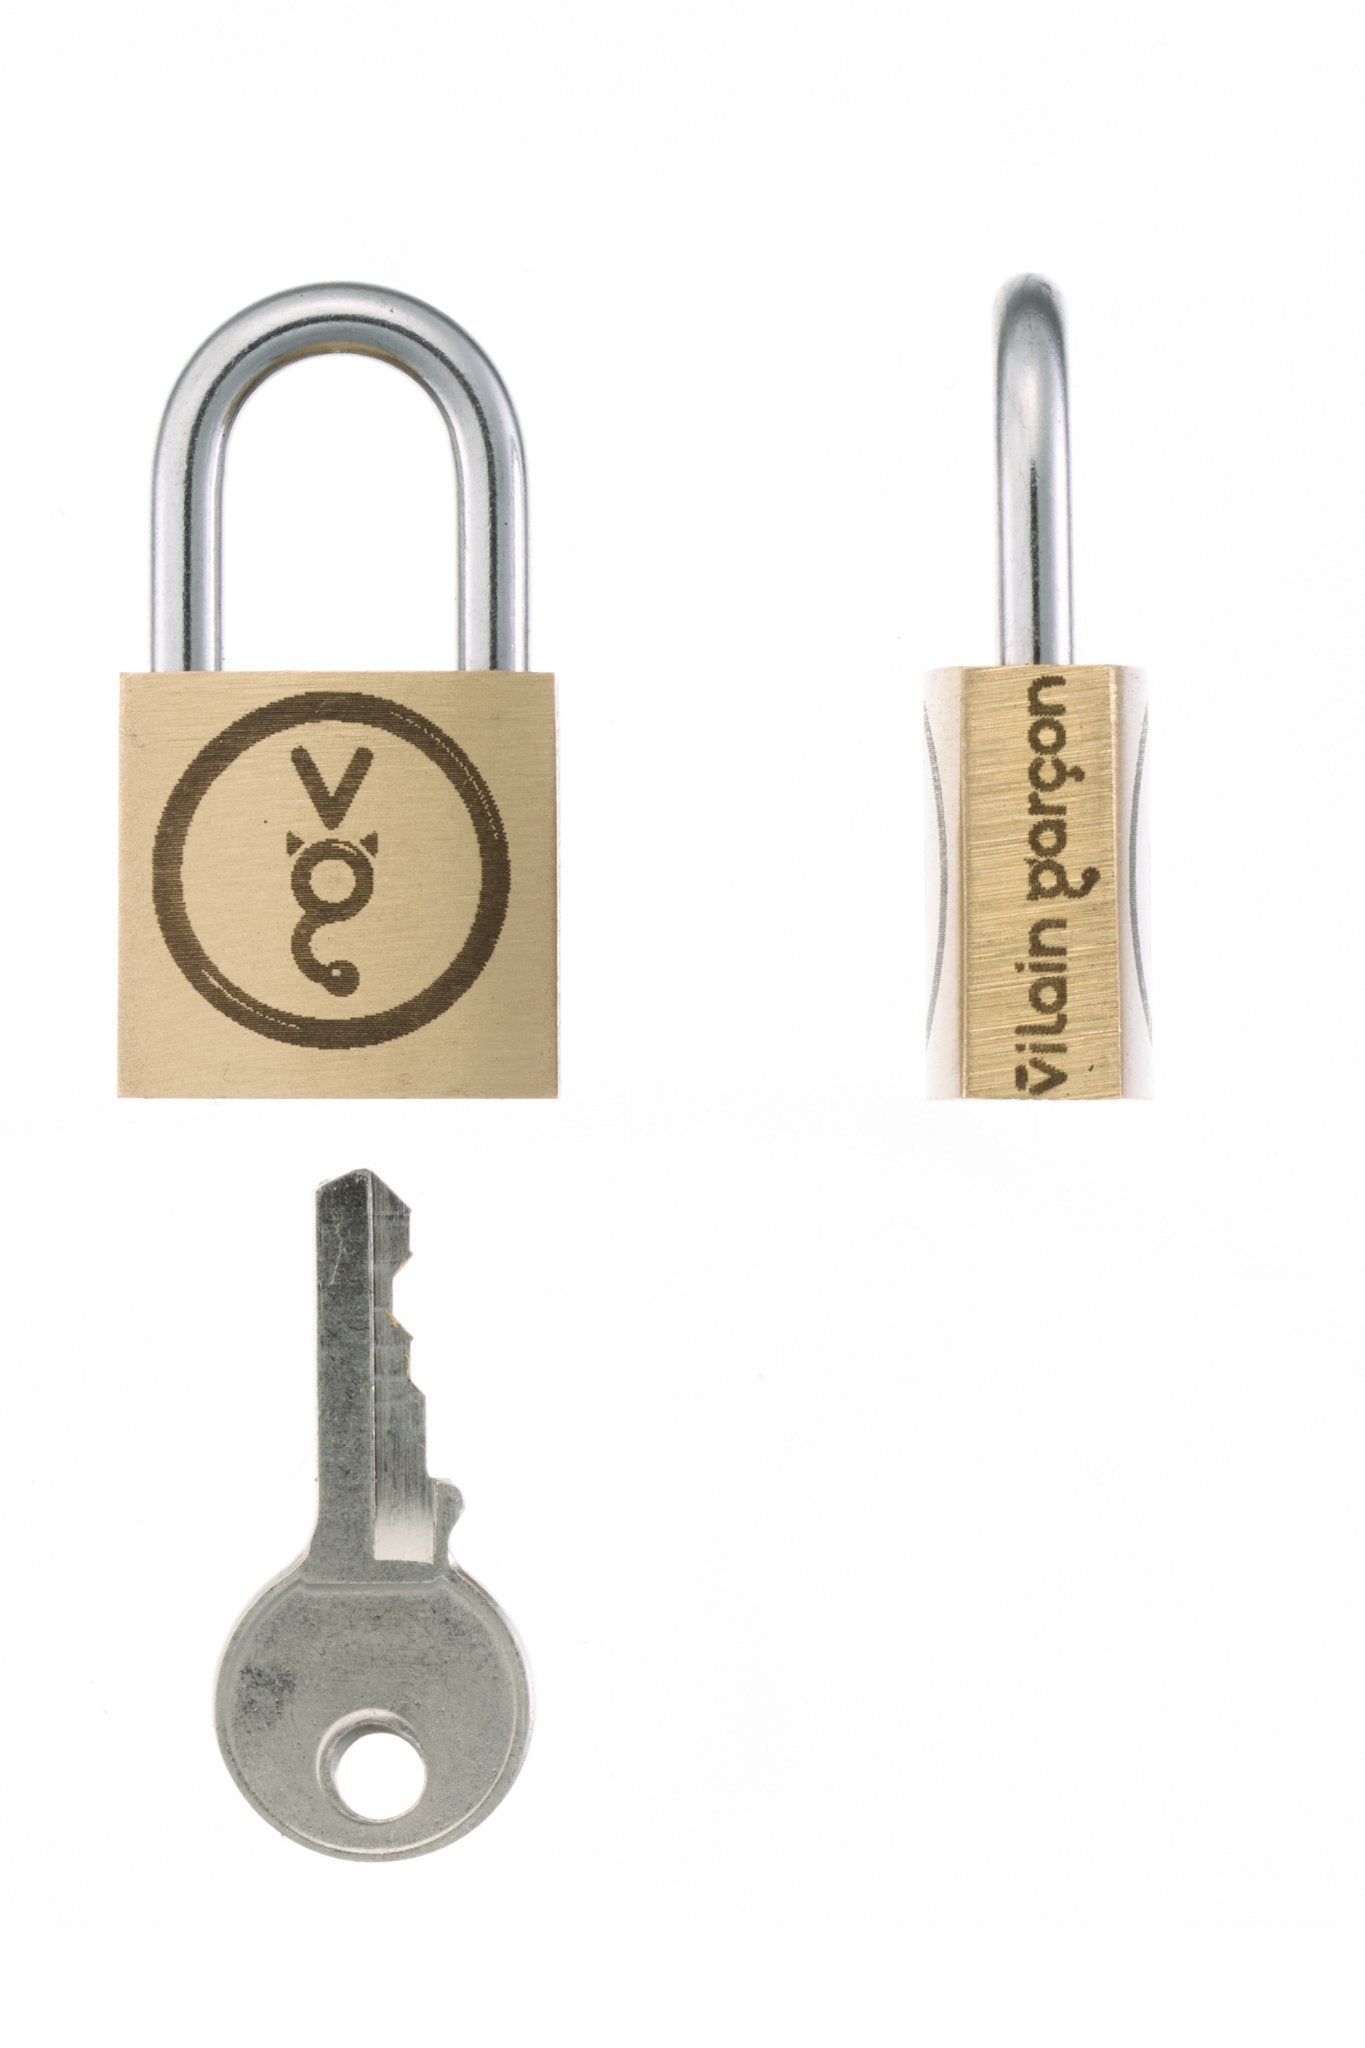 VG lock. Identical key padlocks - Vilain Garçon - VG lock. Identical key padlocks